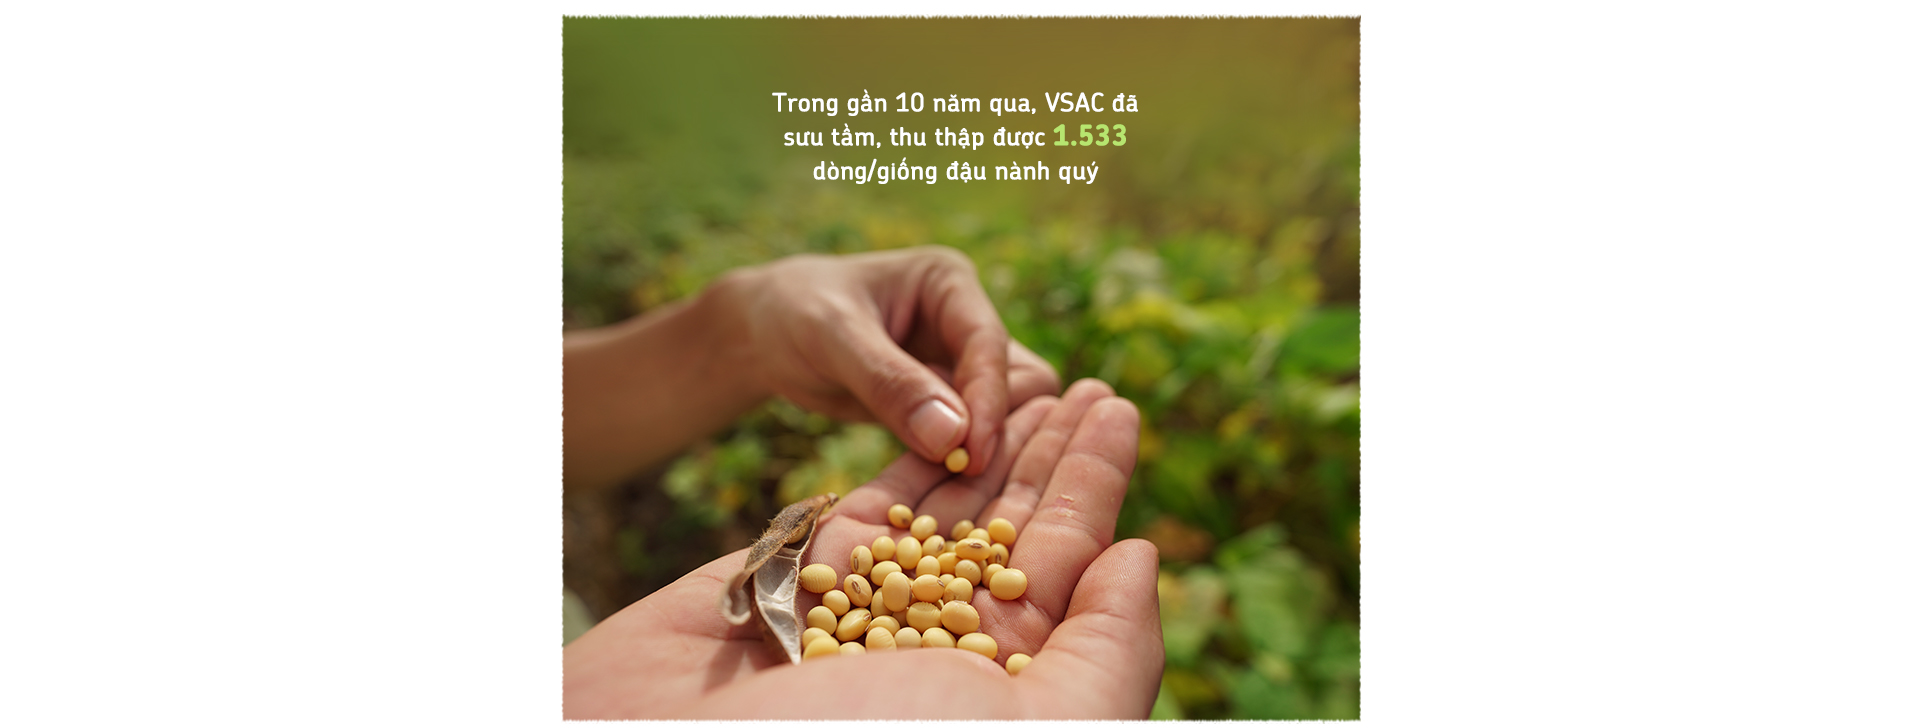 Xây nền móng cho nông nghiệp đậu nành bền vững - Ảnh 3.